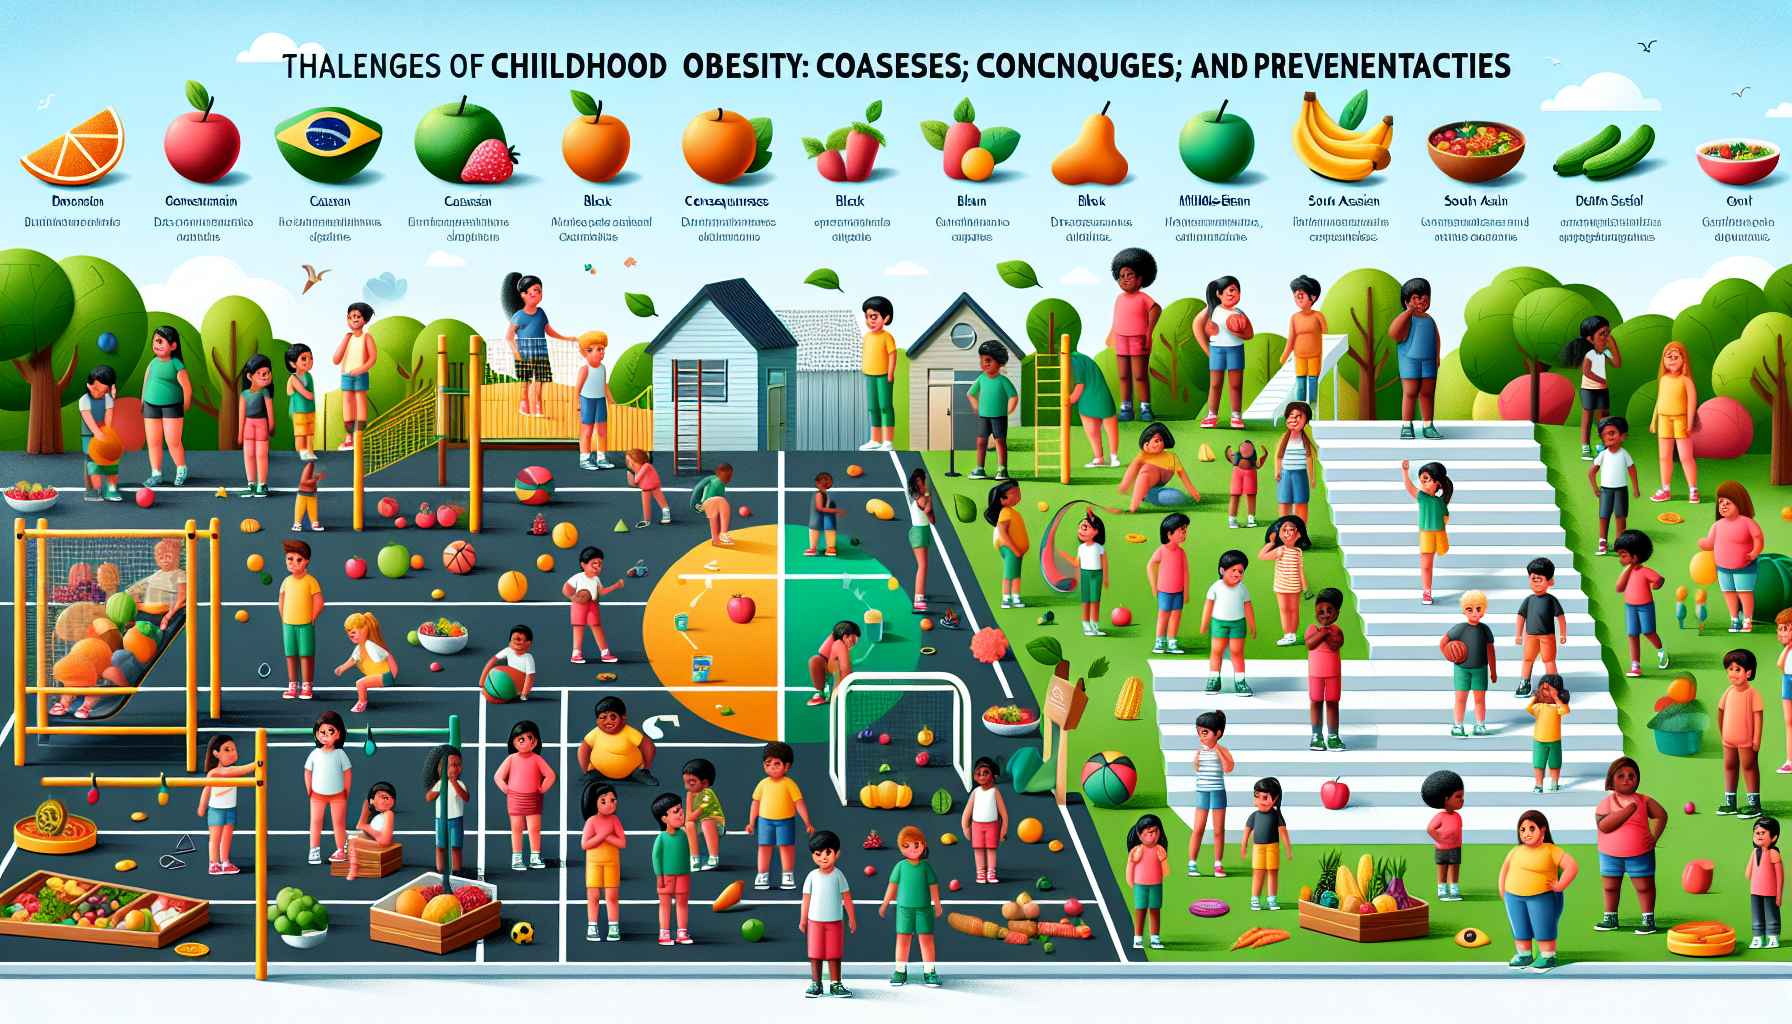 Os Desafios da Obesidade Infantil no Brasil: Causas, Consequências e Estratégias de Prevenção